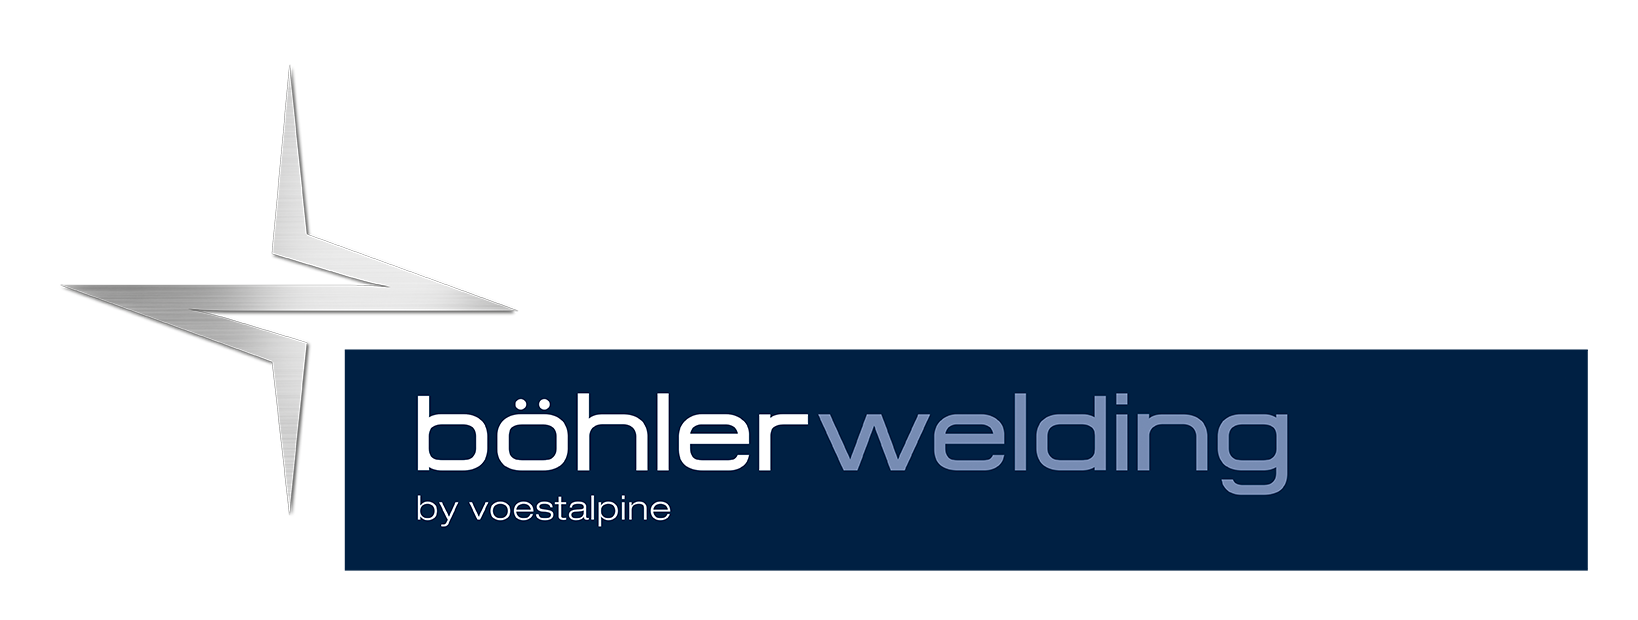 Voestalpine Böhler Welding